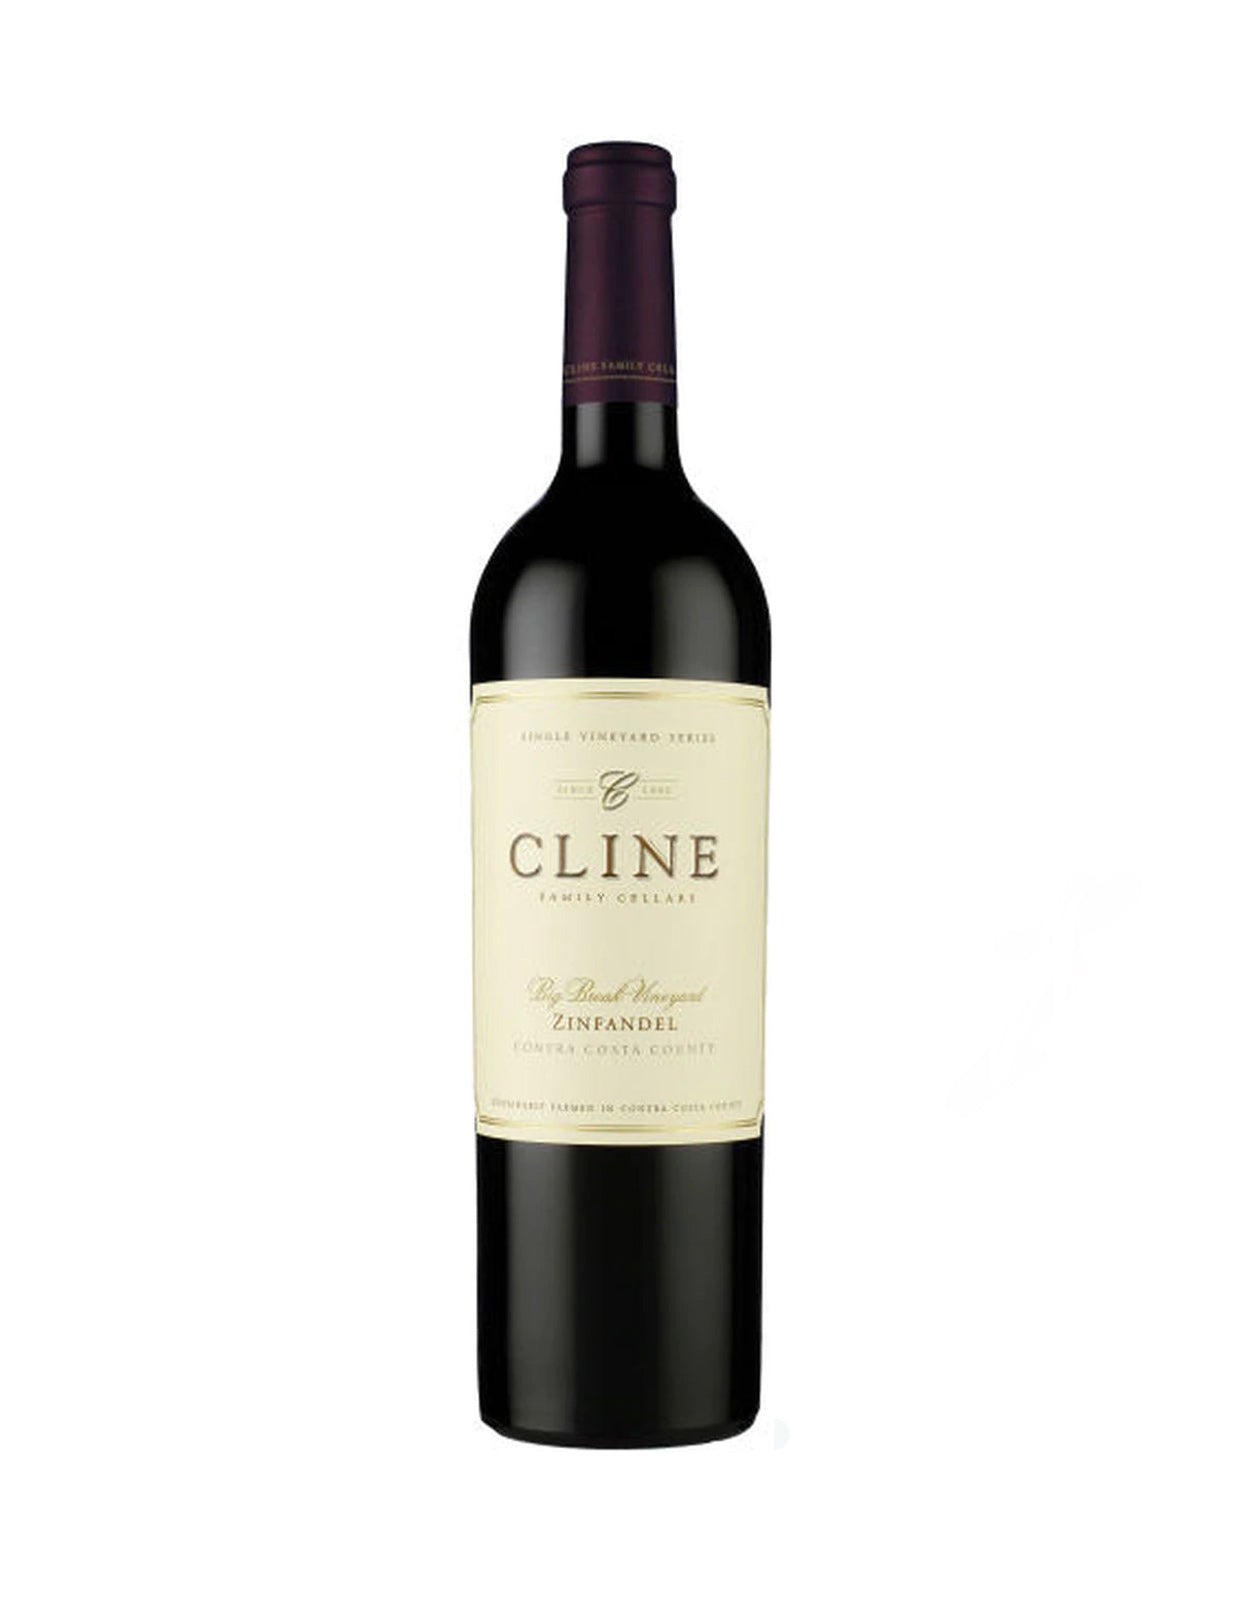 Cline Zinfandel Big Break Vineyard 2016